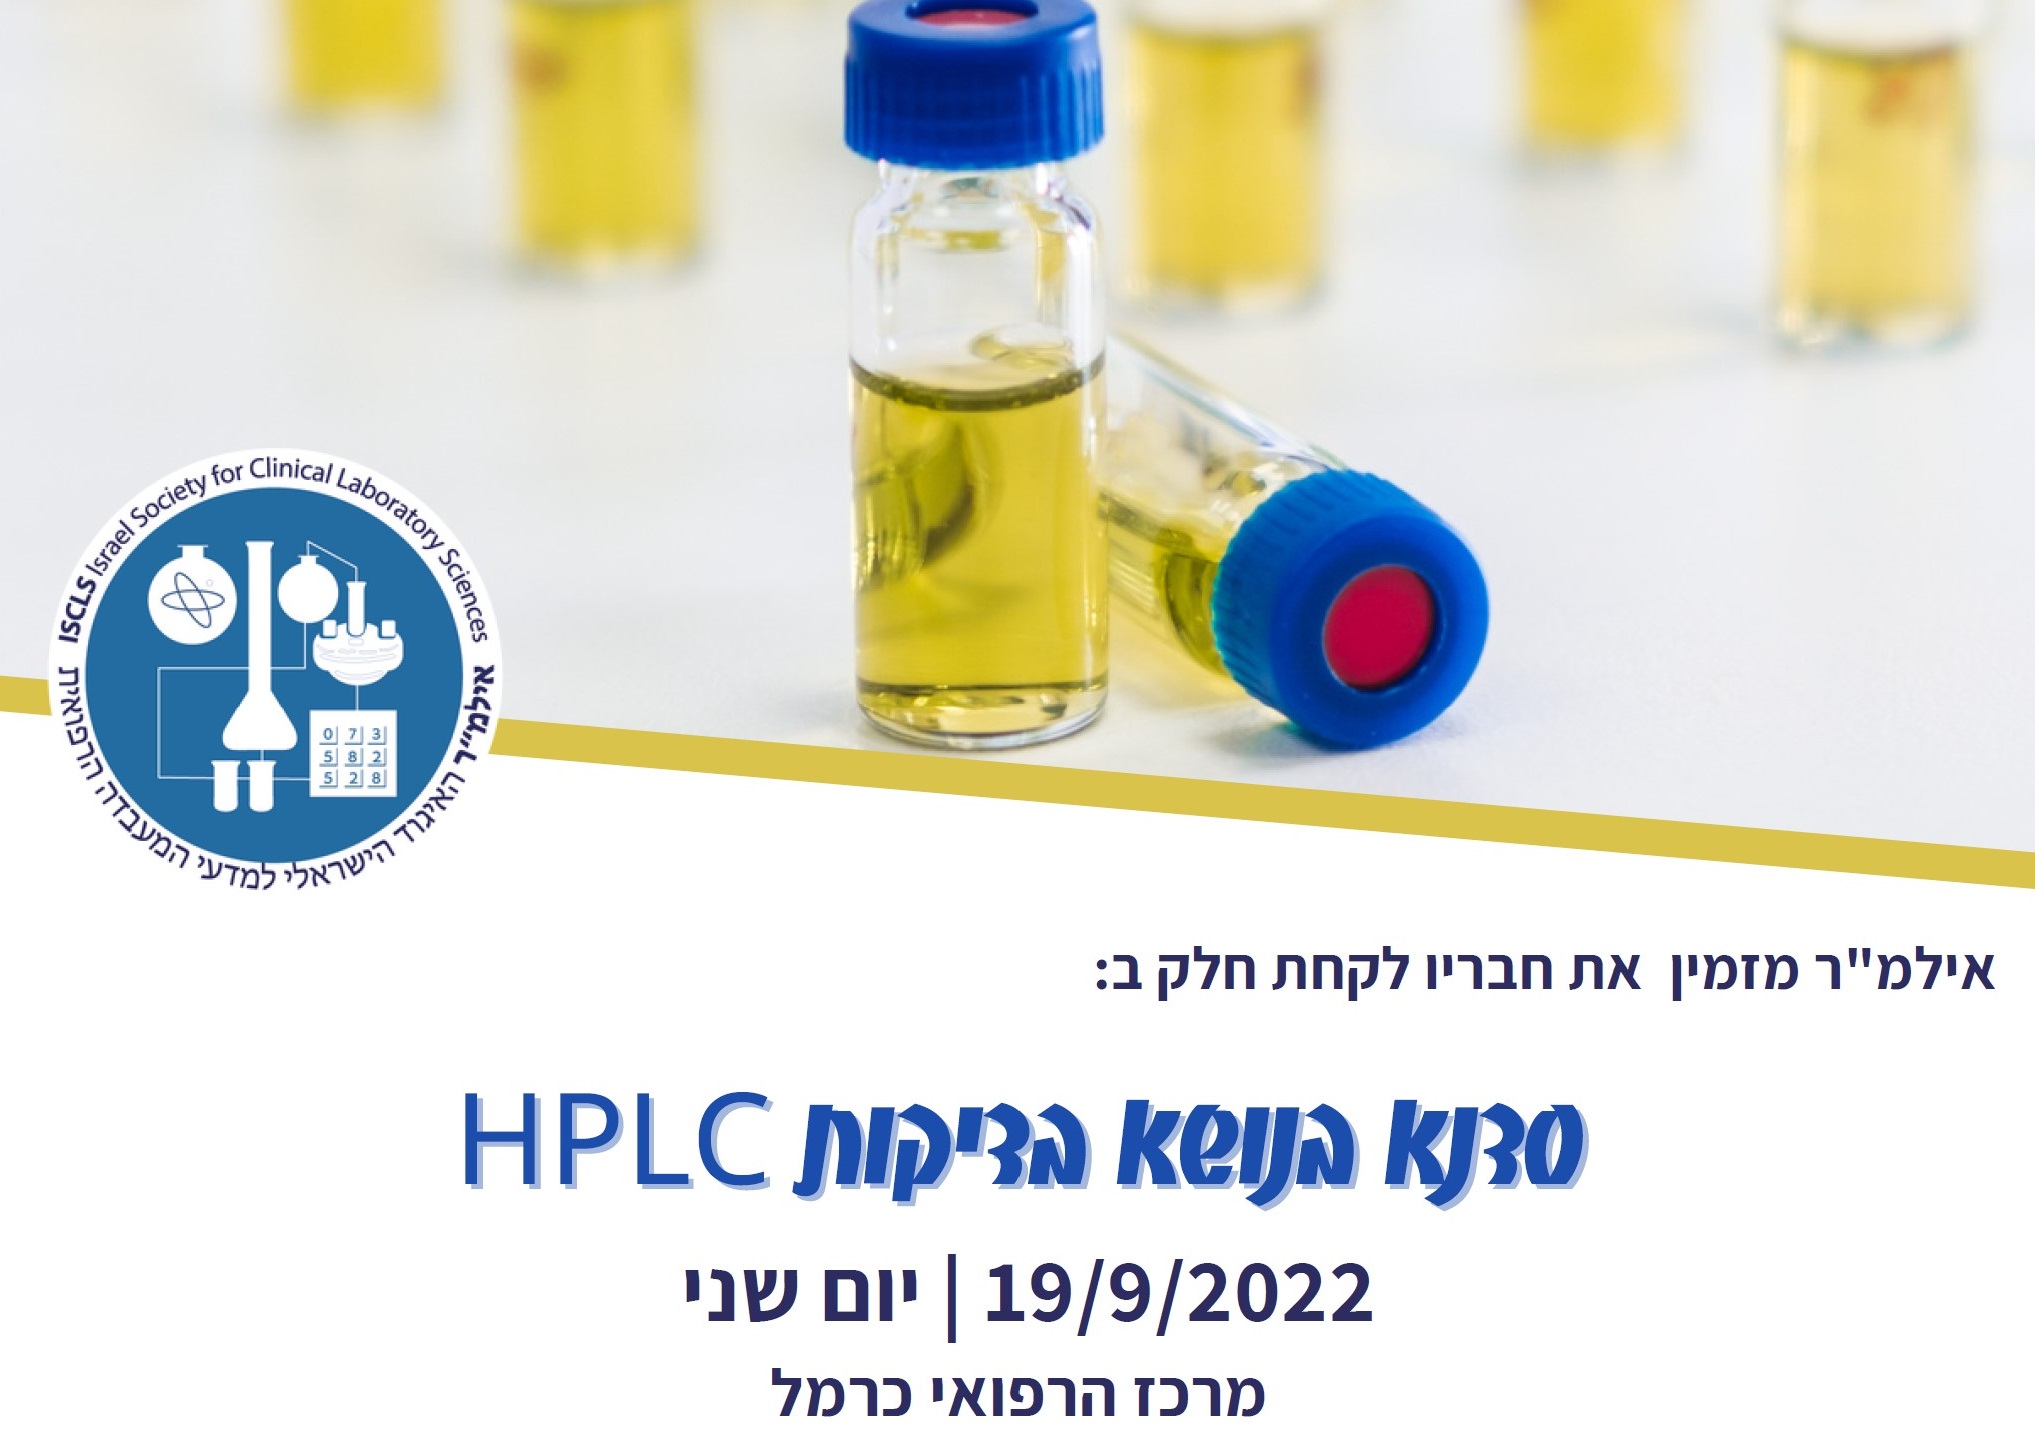 סדנת בדיקות HPLC | יום שני | 19/9/2022 | מרכז הרפואי כרמל, חיפה